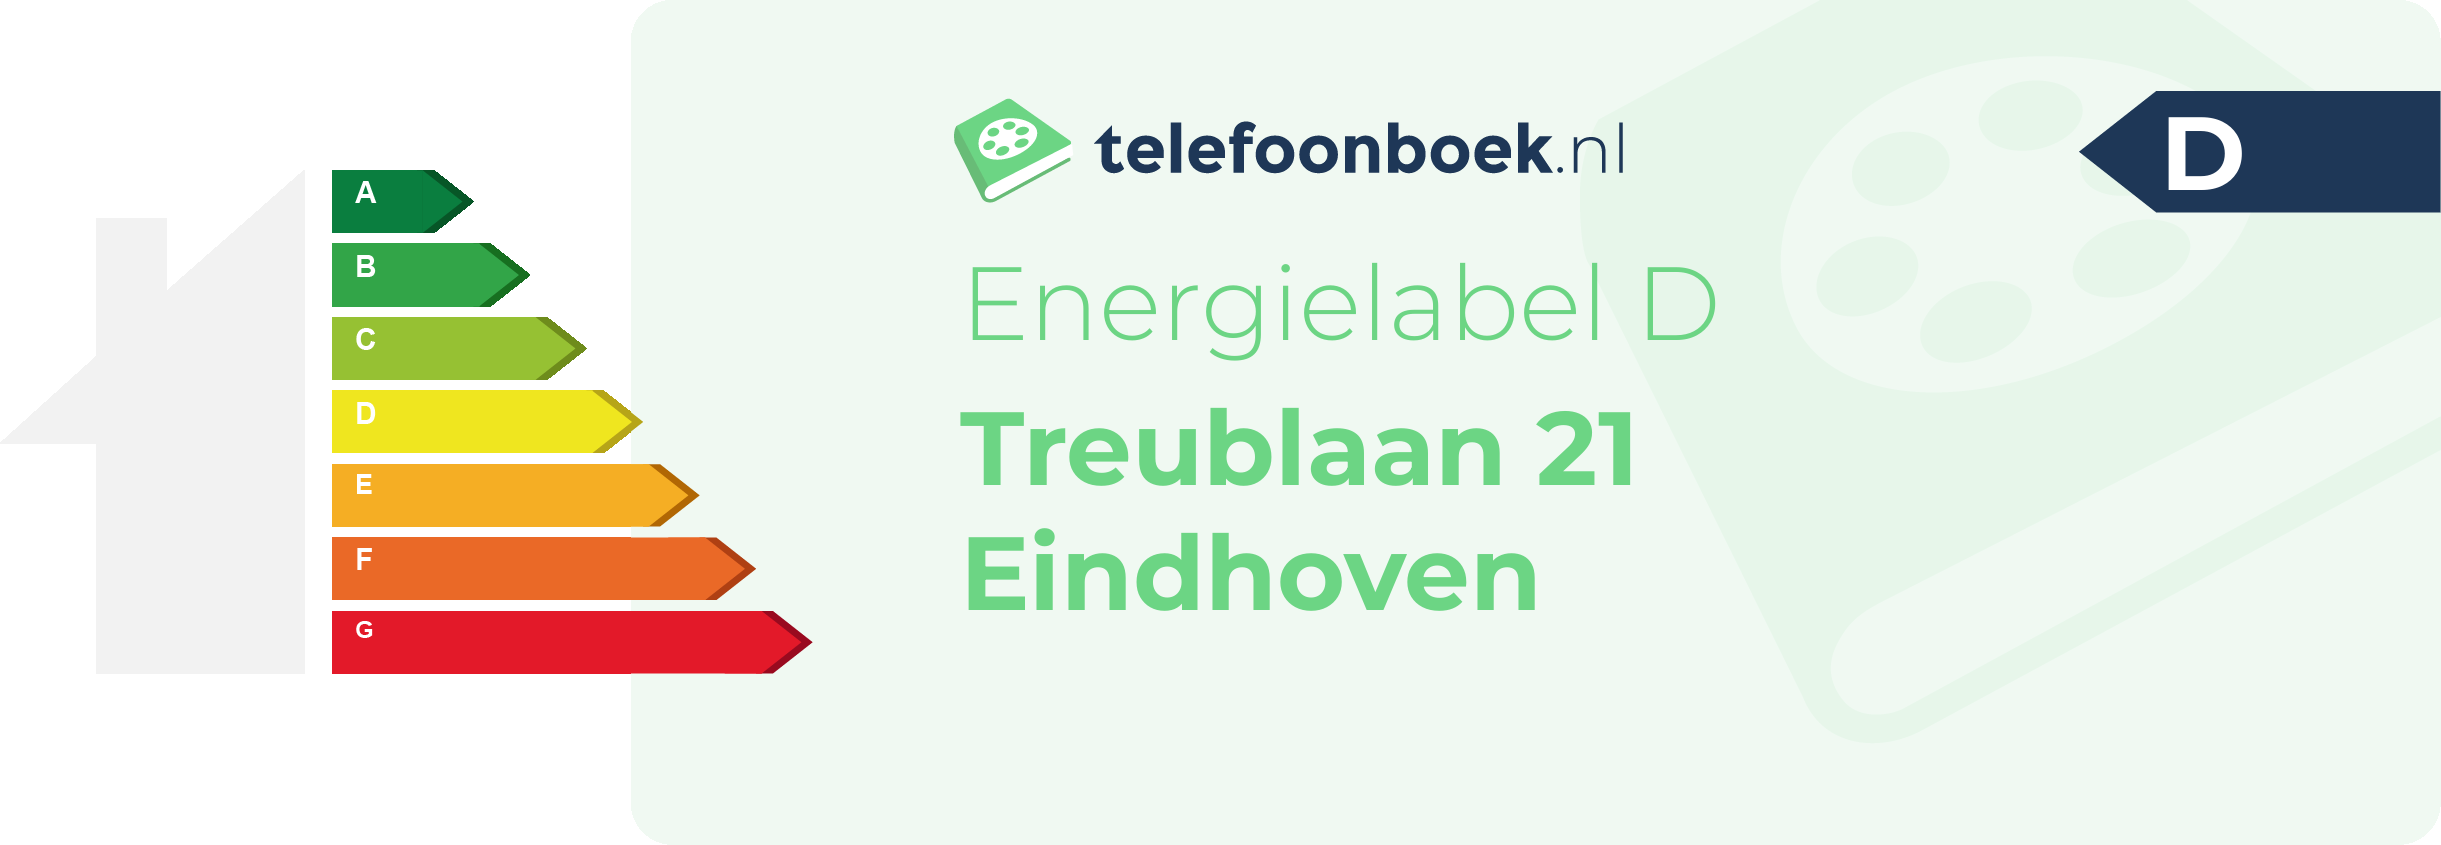 Energielabel Treublaan 21 Eindhoven